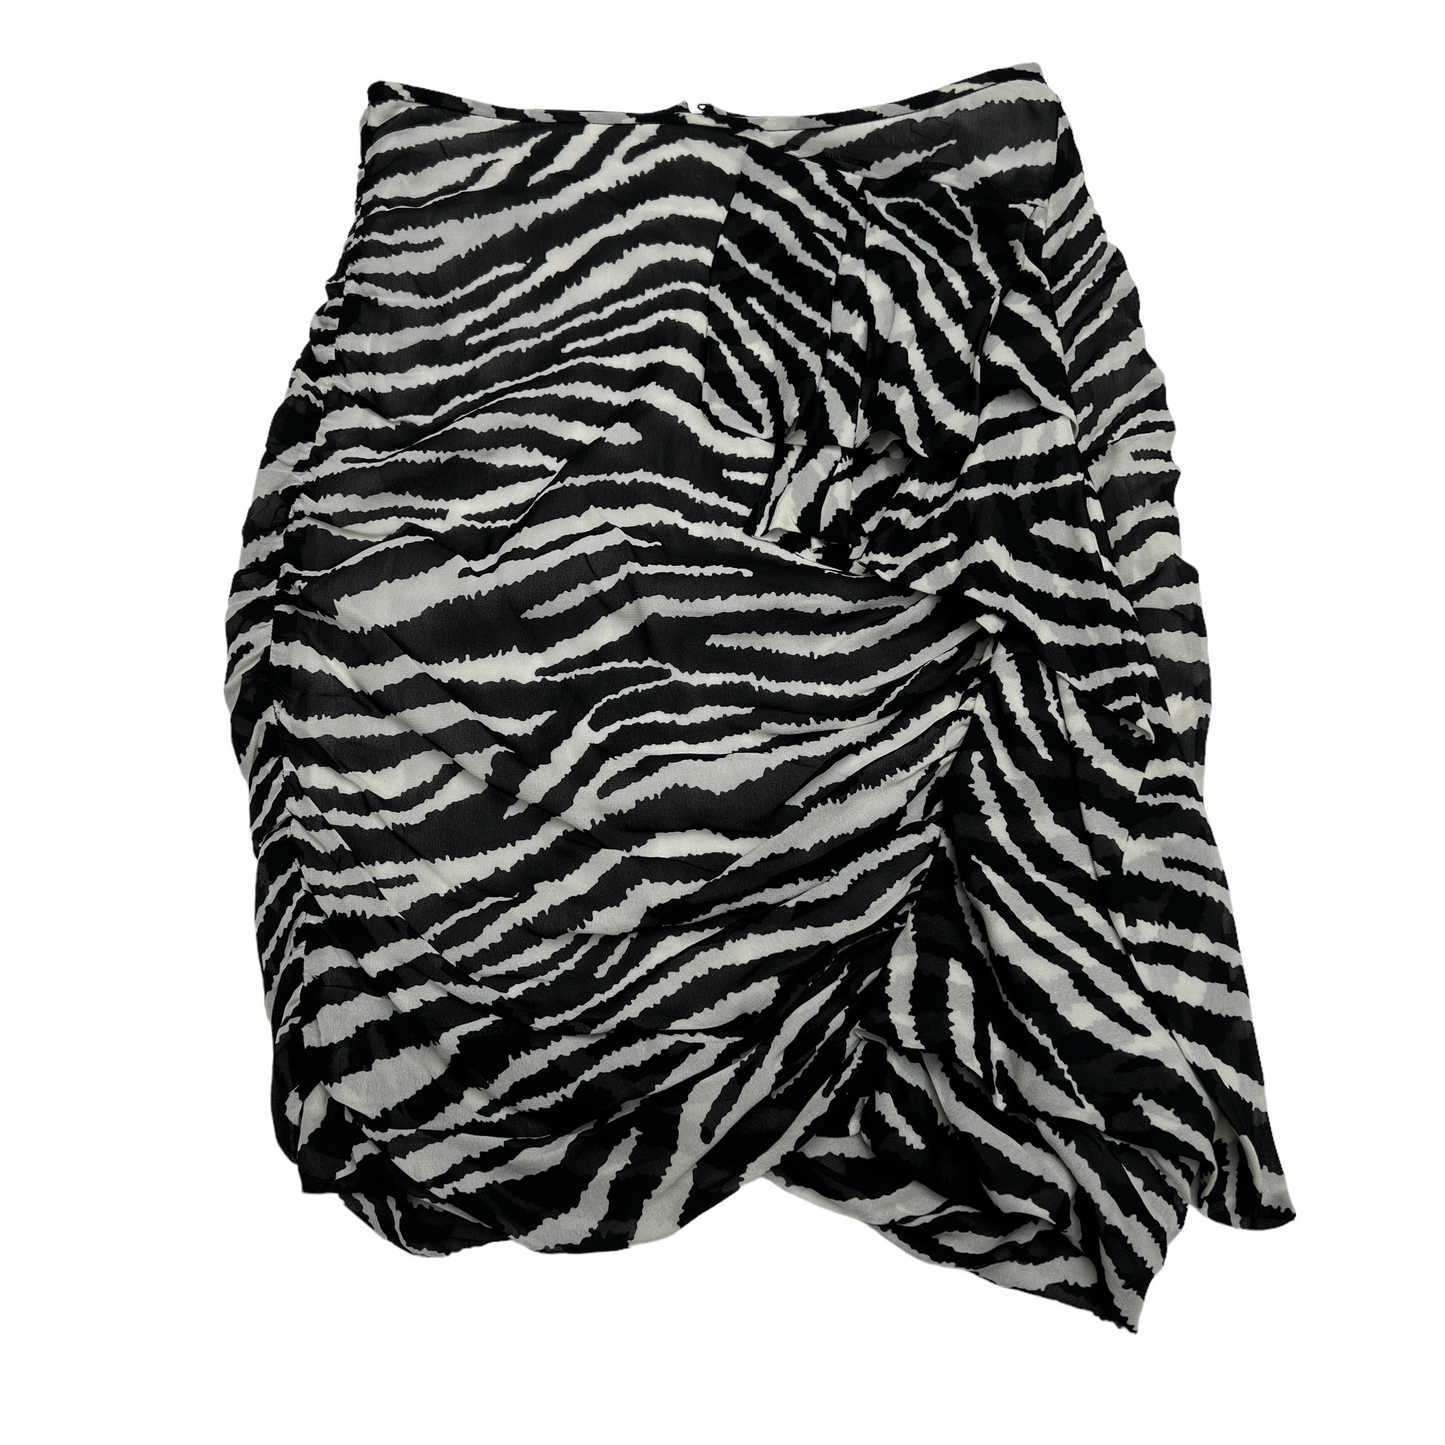 Zebra Print Mini Skirt - XS